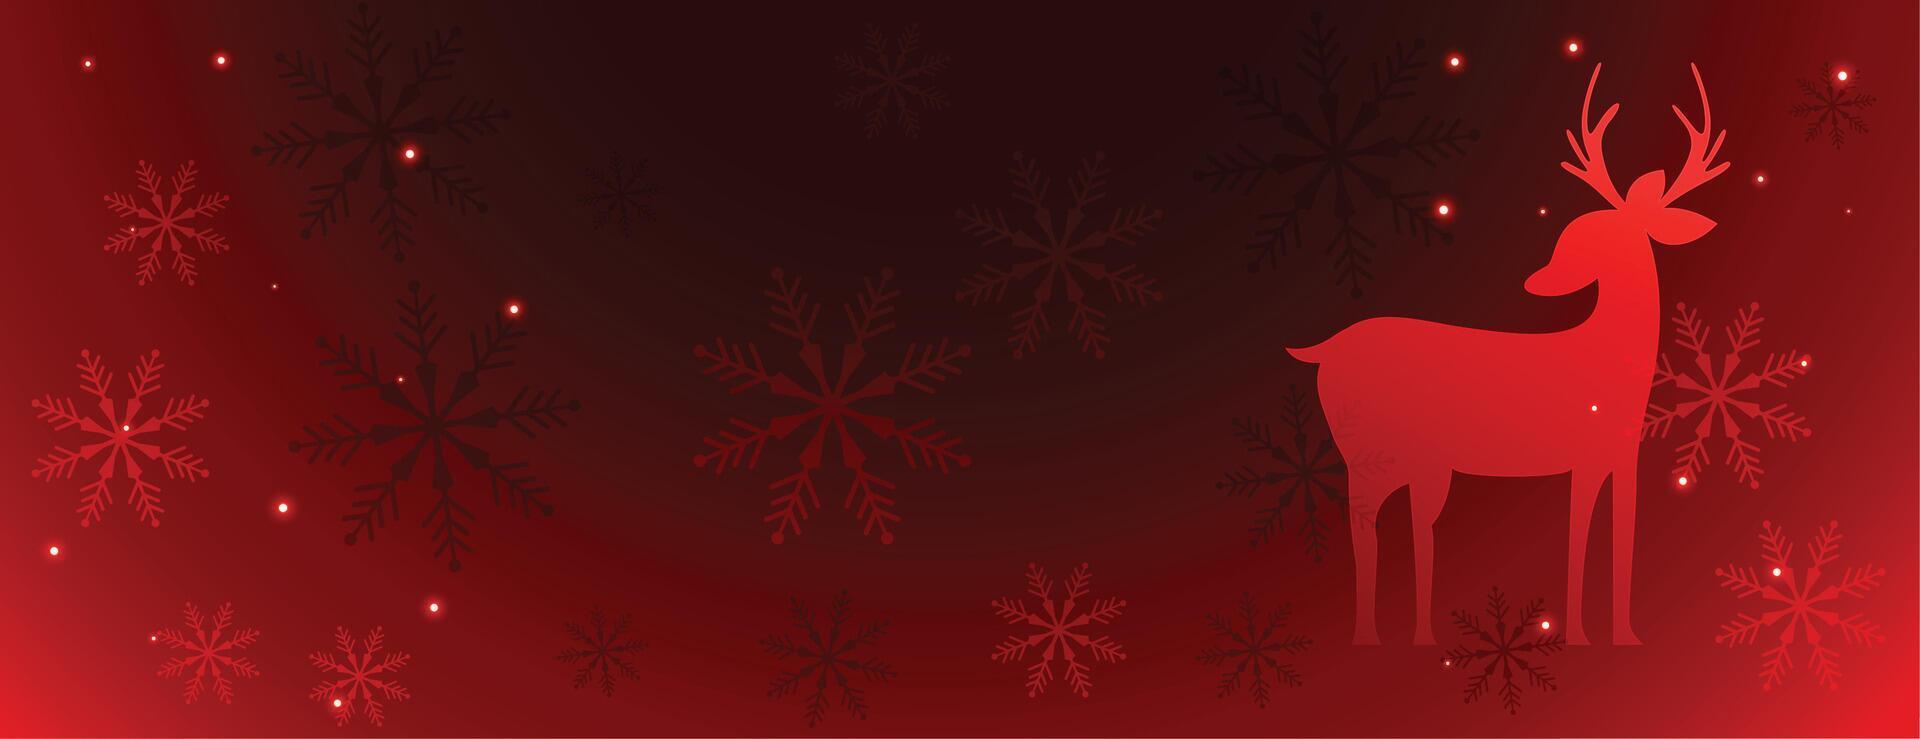 magisch Weihnachten rot Banner mit Hirsch und Schneeflocken vektor